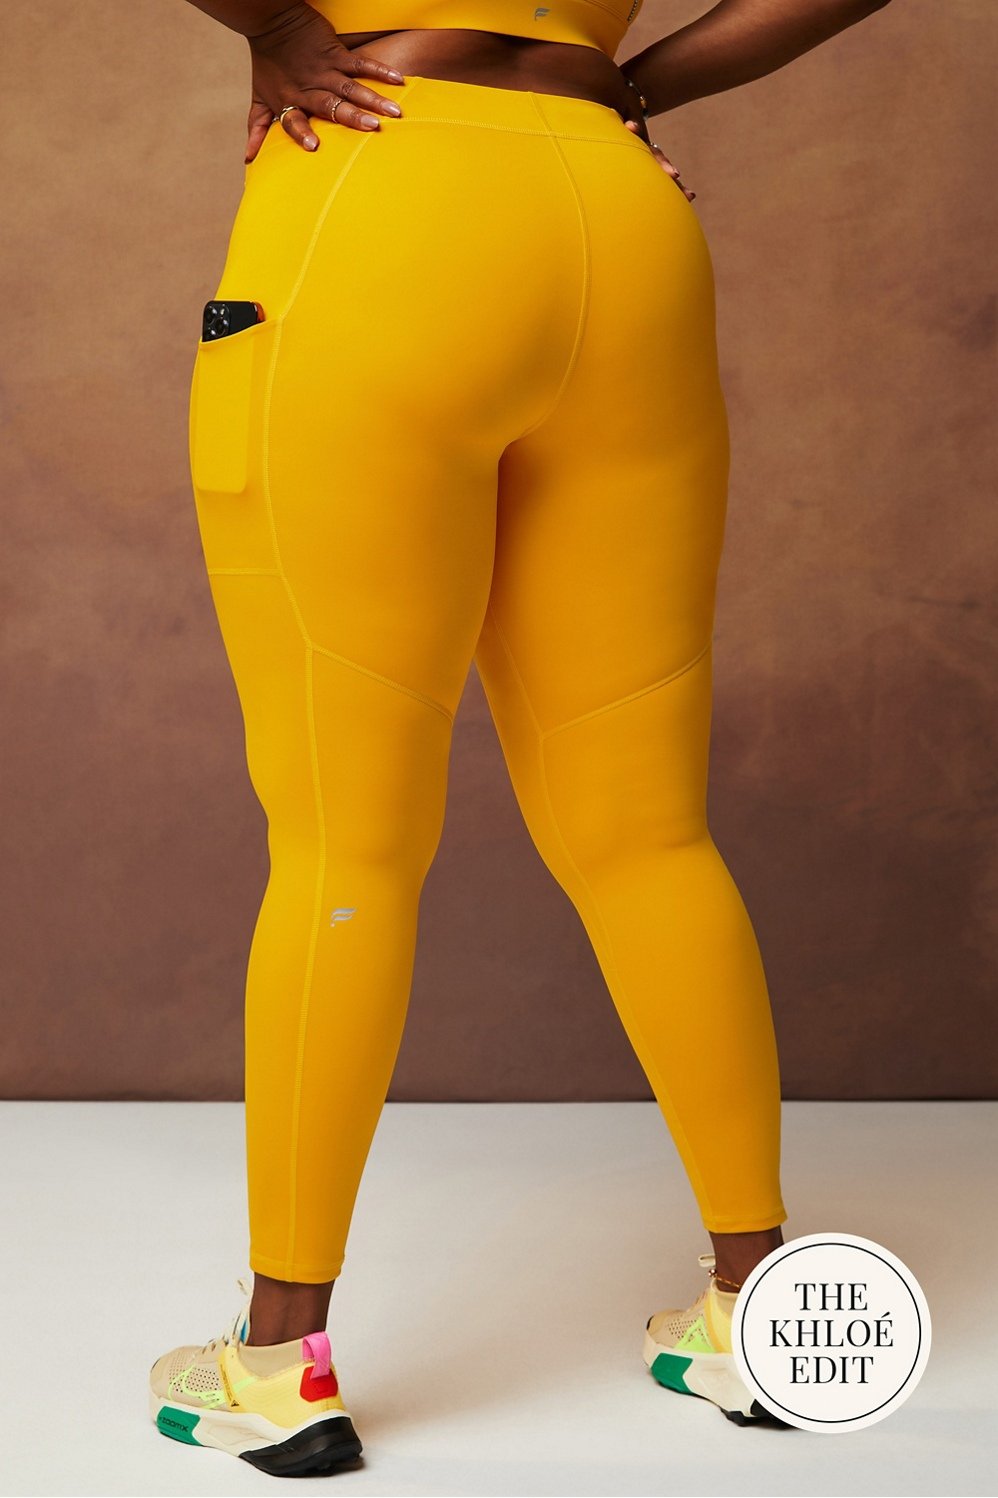 Buy Women's Satin Lycra Shiny Leggings (Yellow, Large) at